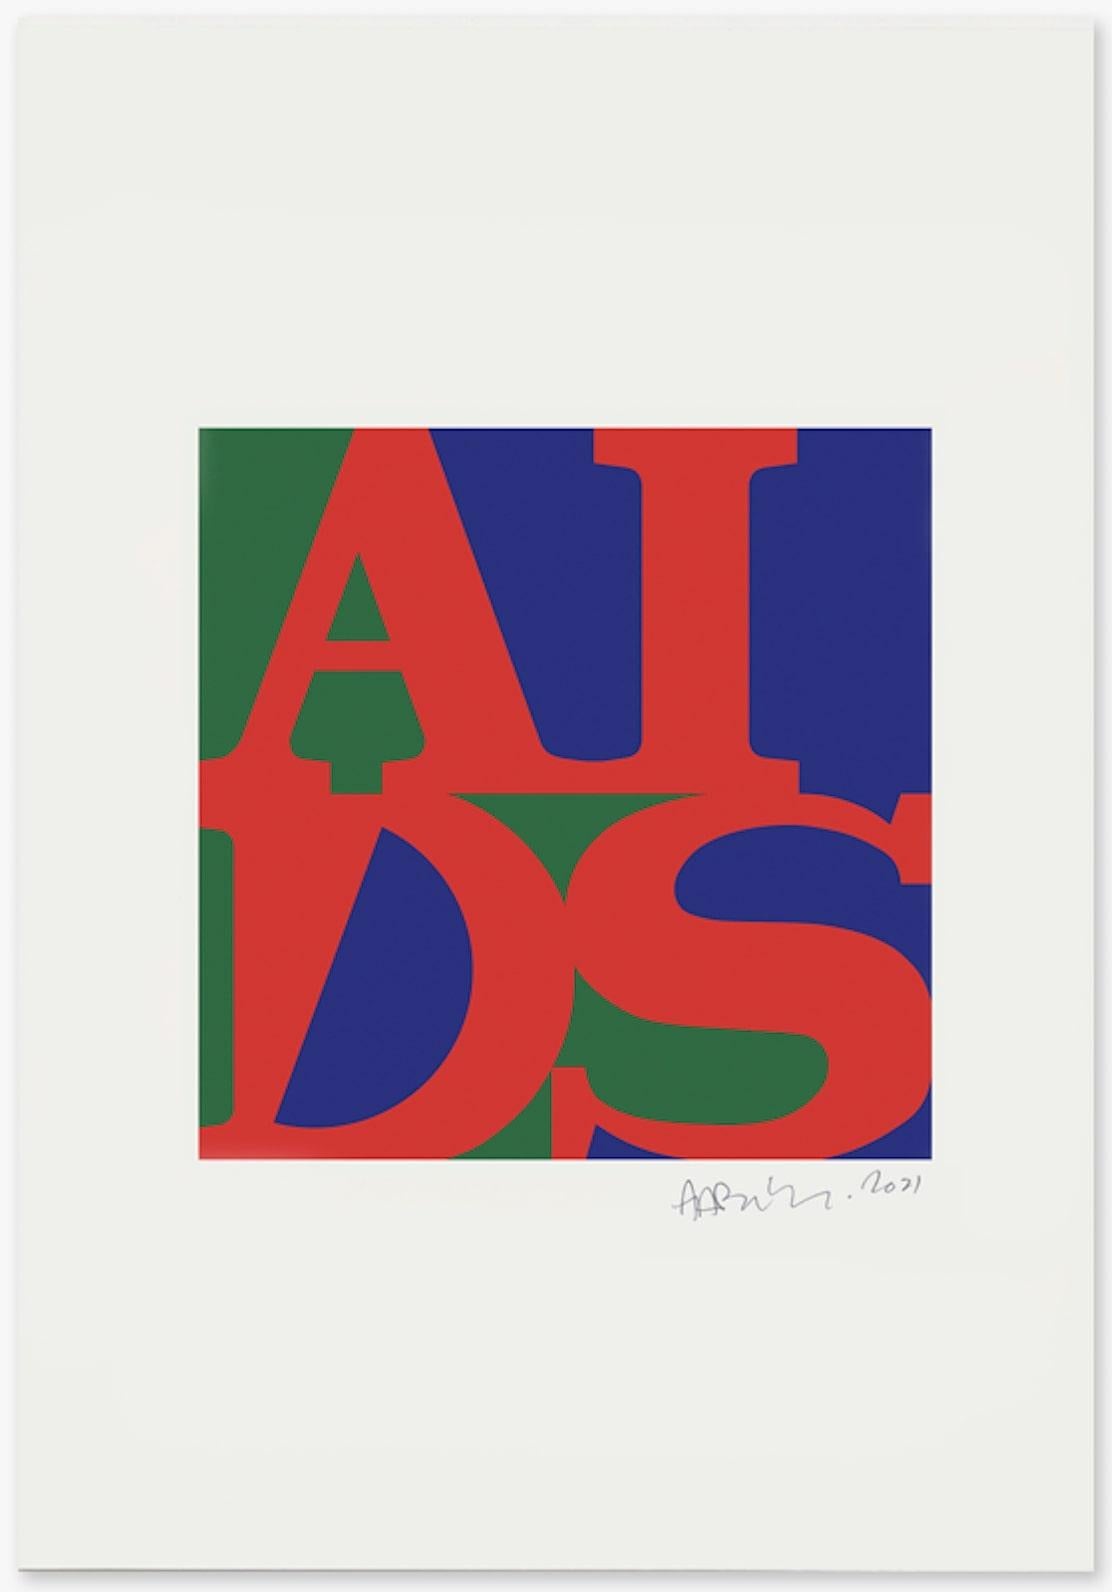 ‘AIDS (Cadmium Red Light)’
210mm x 297mm
Silkscreen print on Somerset 300gsm satin white paper
Printed Signature
Unframed